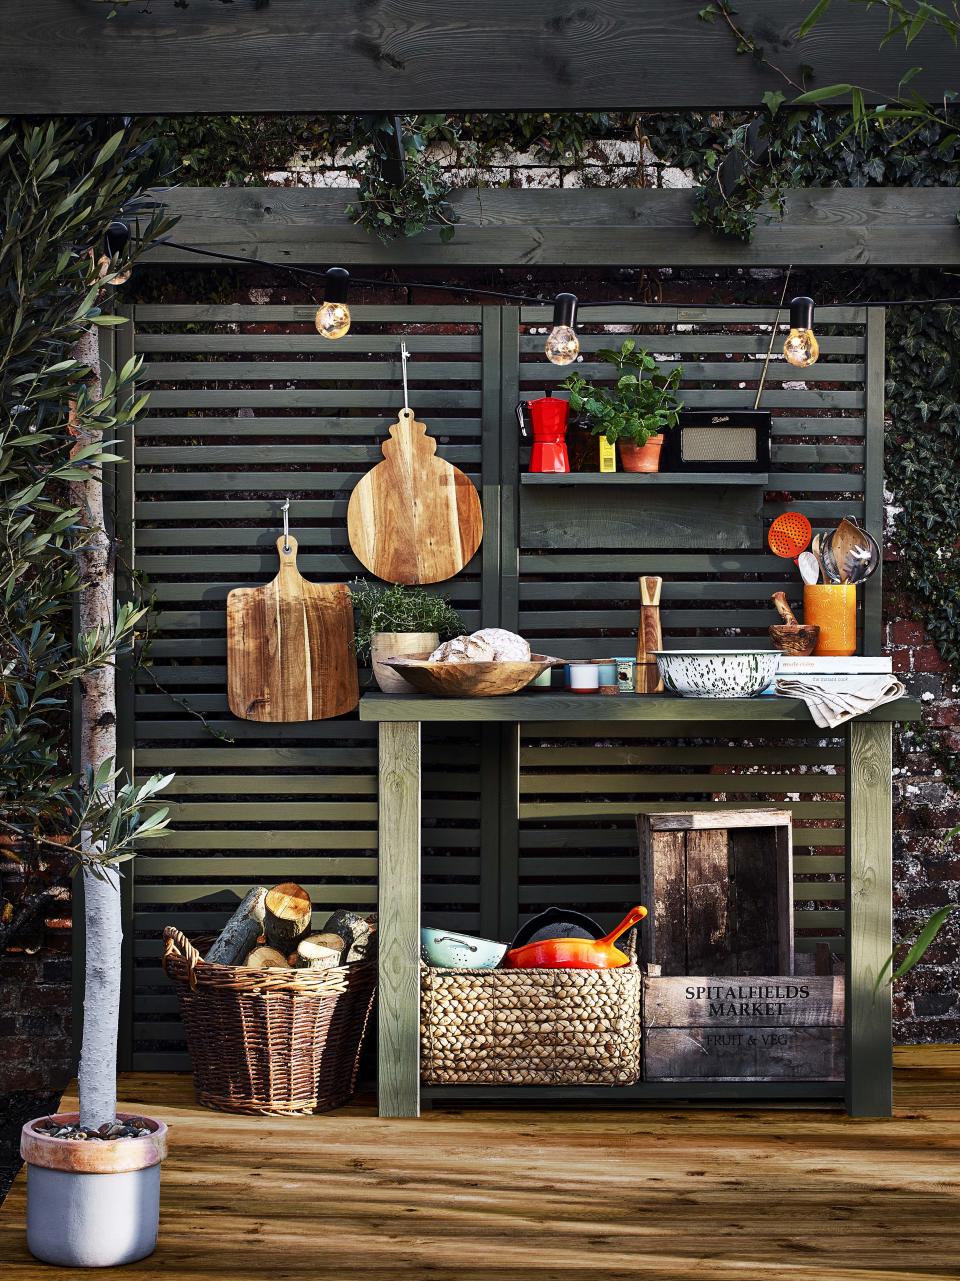 Add an outdoor kitchen&#xA0;